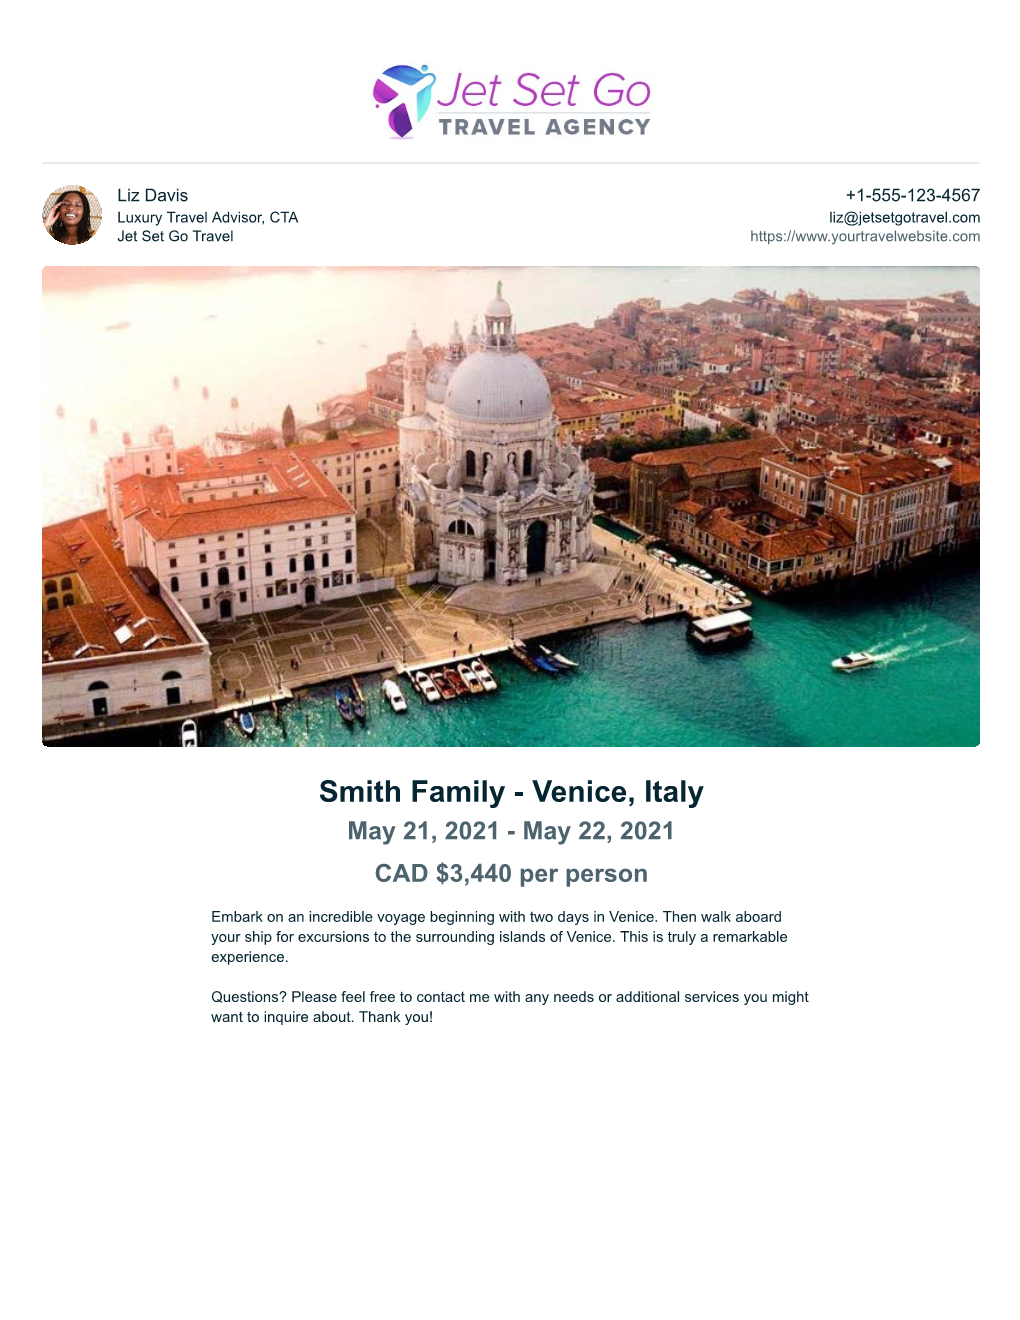 Smith Family - Venice, Italy May 21, 2021 - May 22, 2021 CAD $3,440 Per Person